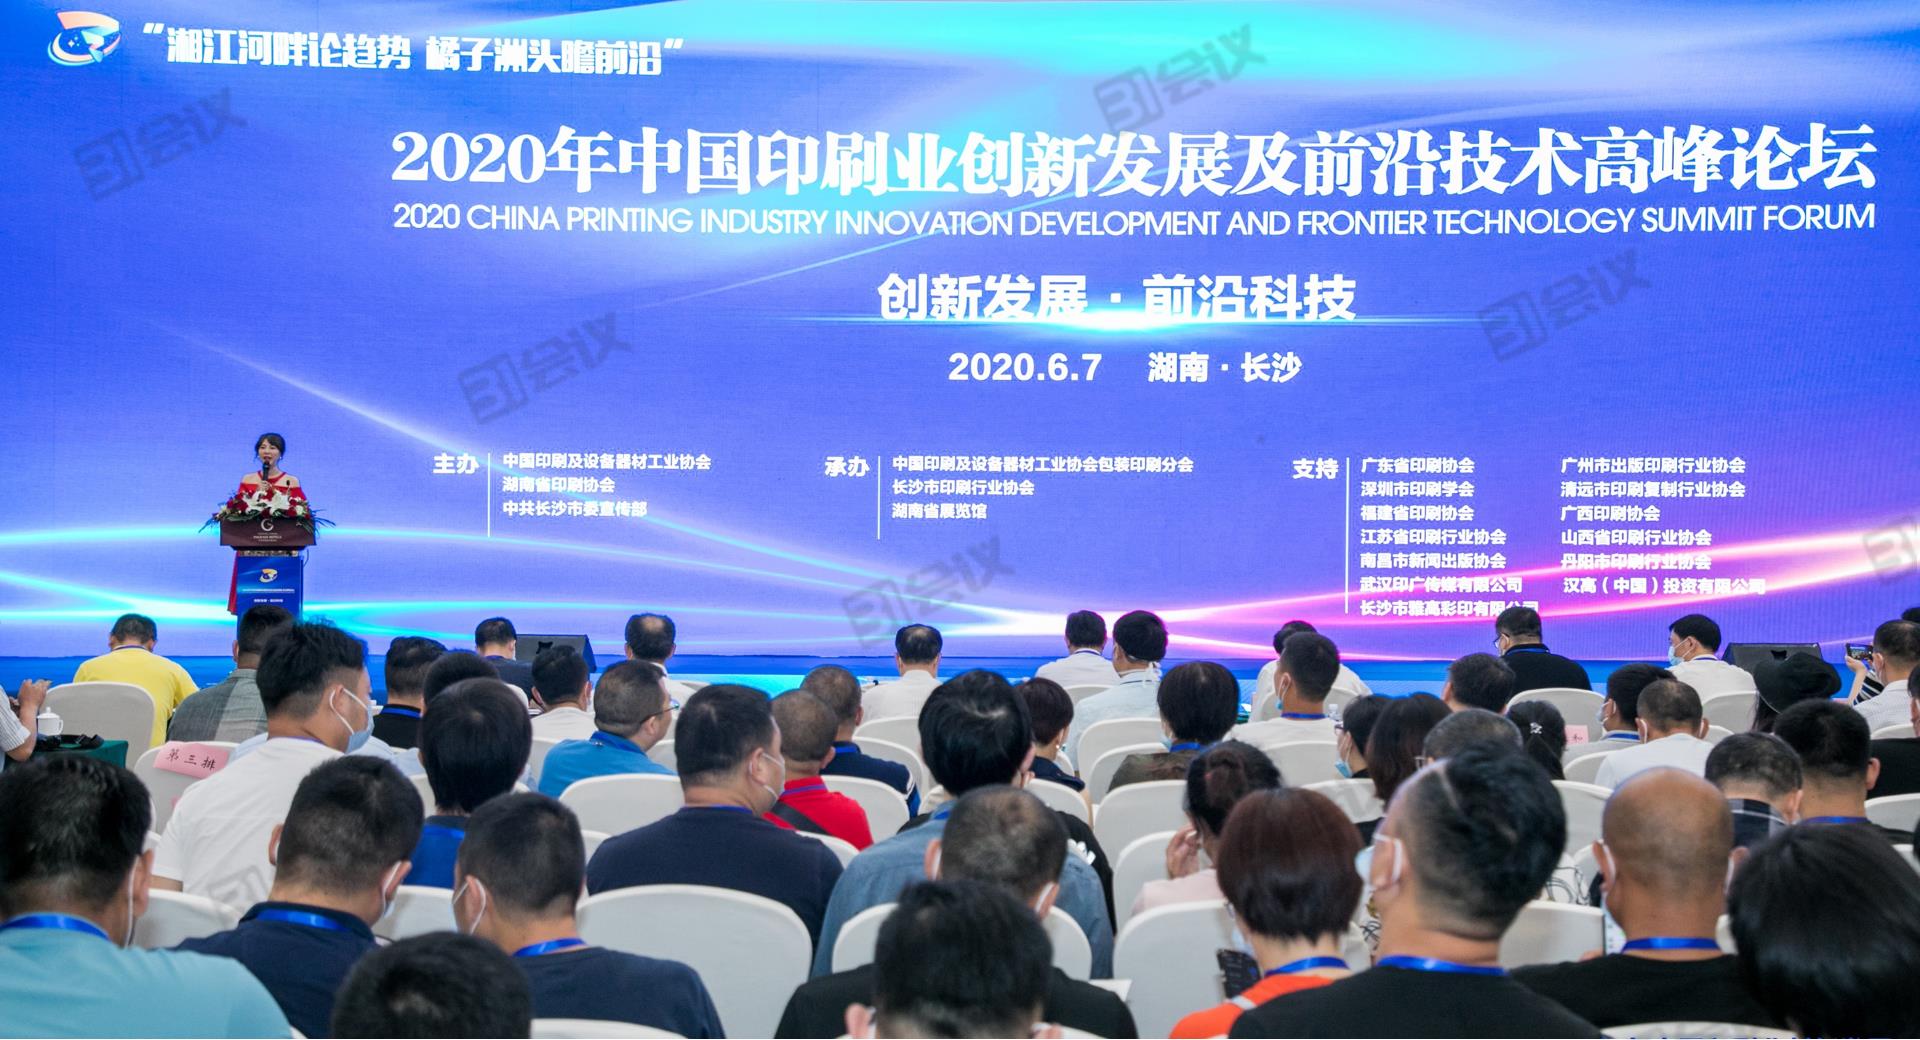 2020年中国印刷业创新发展及前沿技术高峰论坛